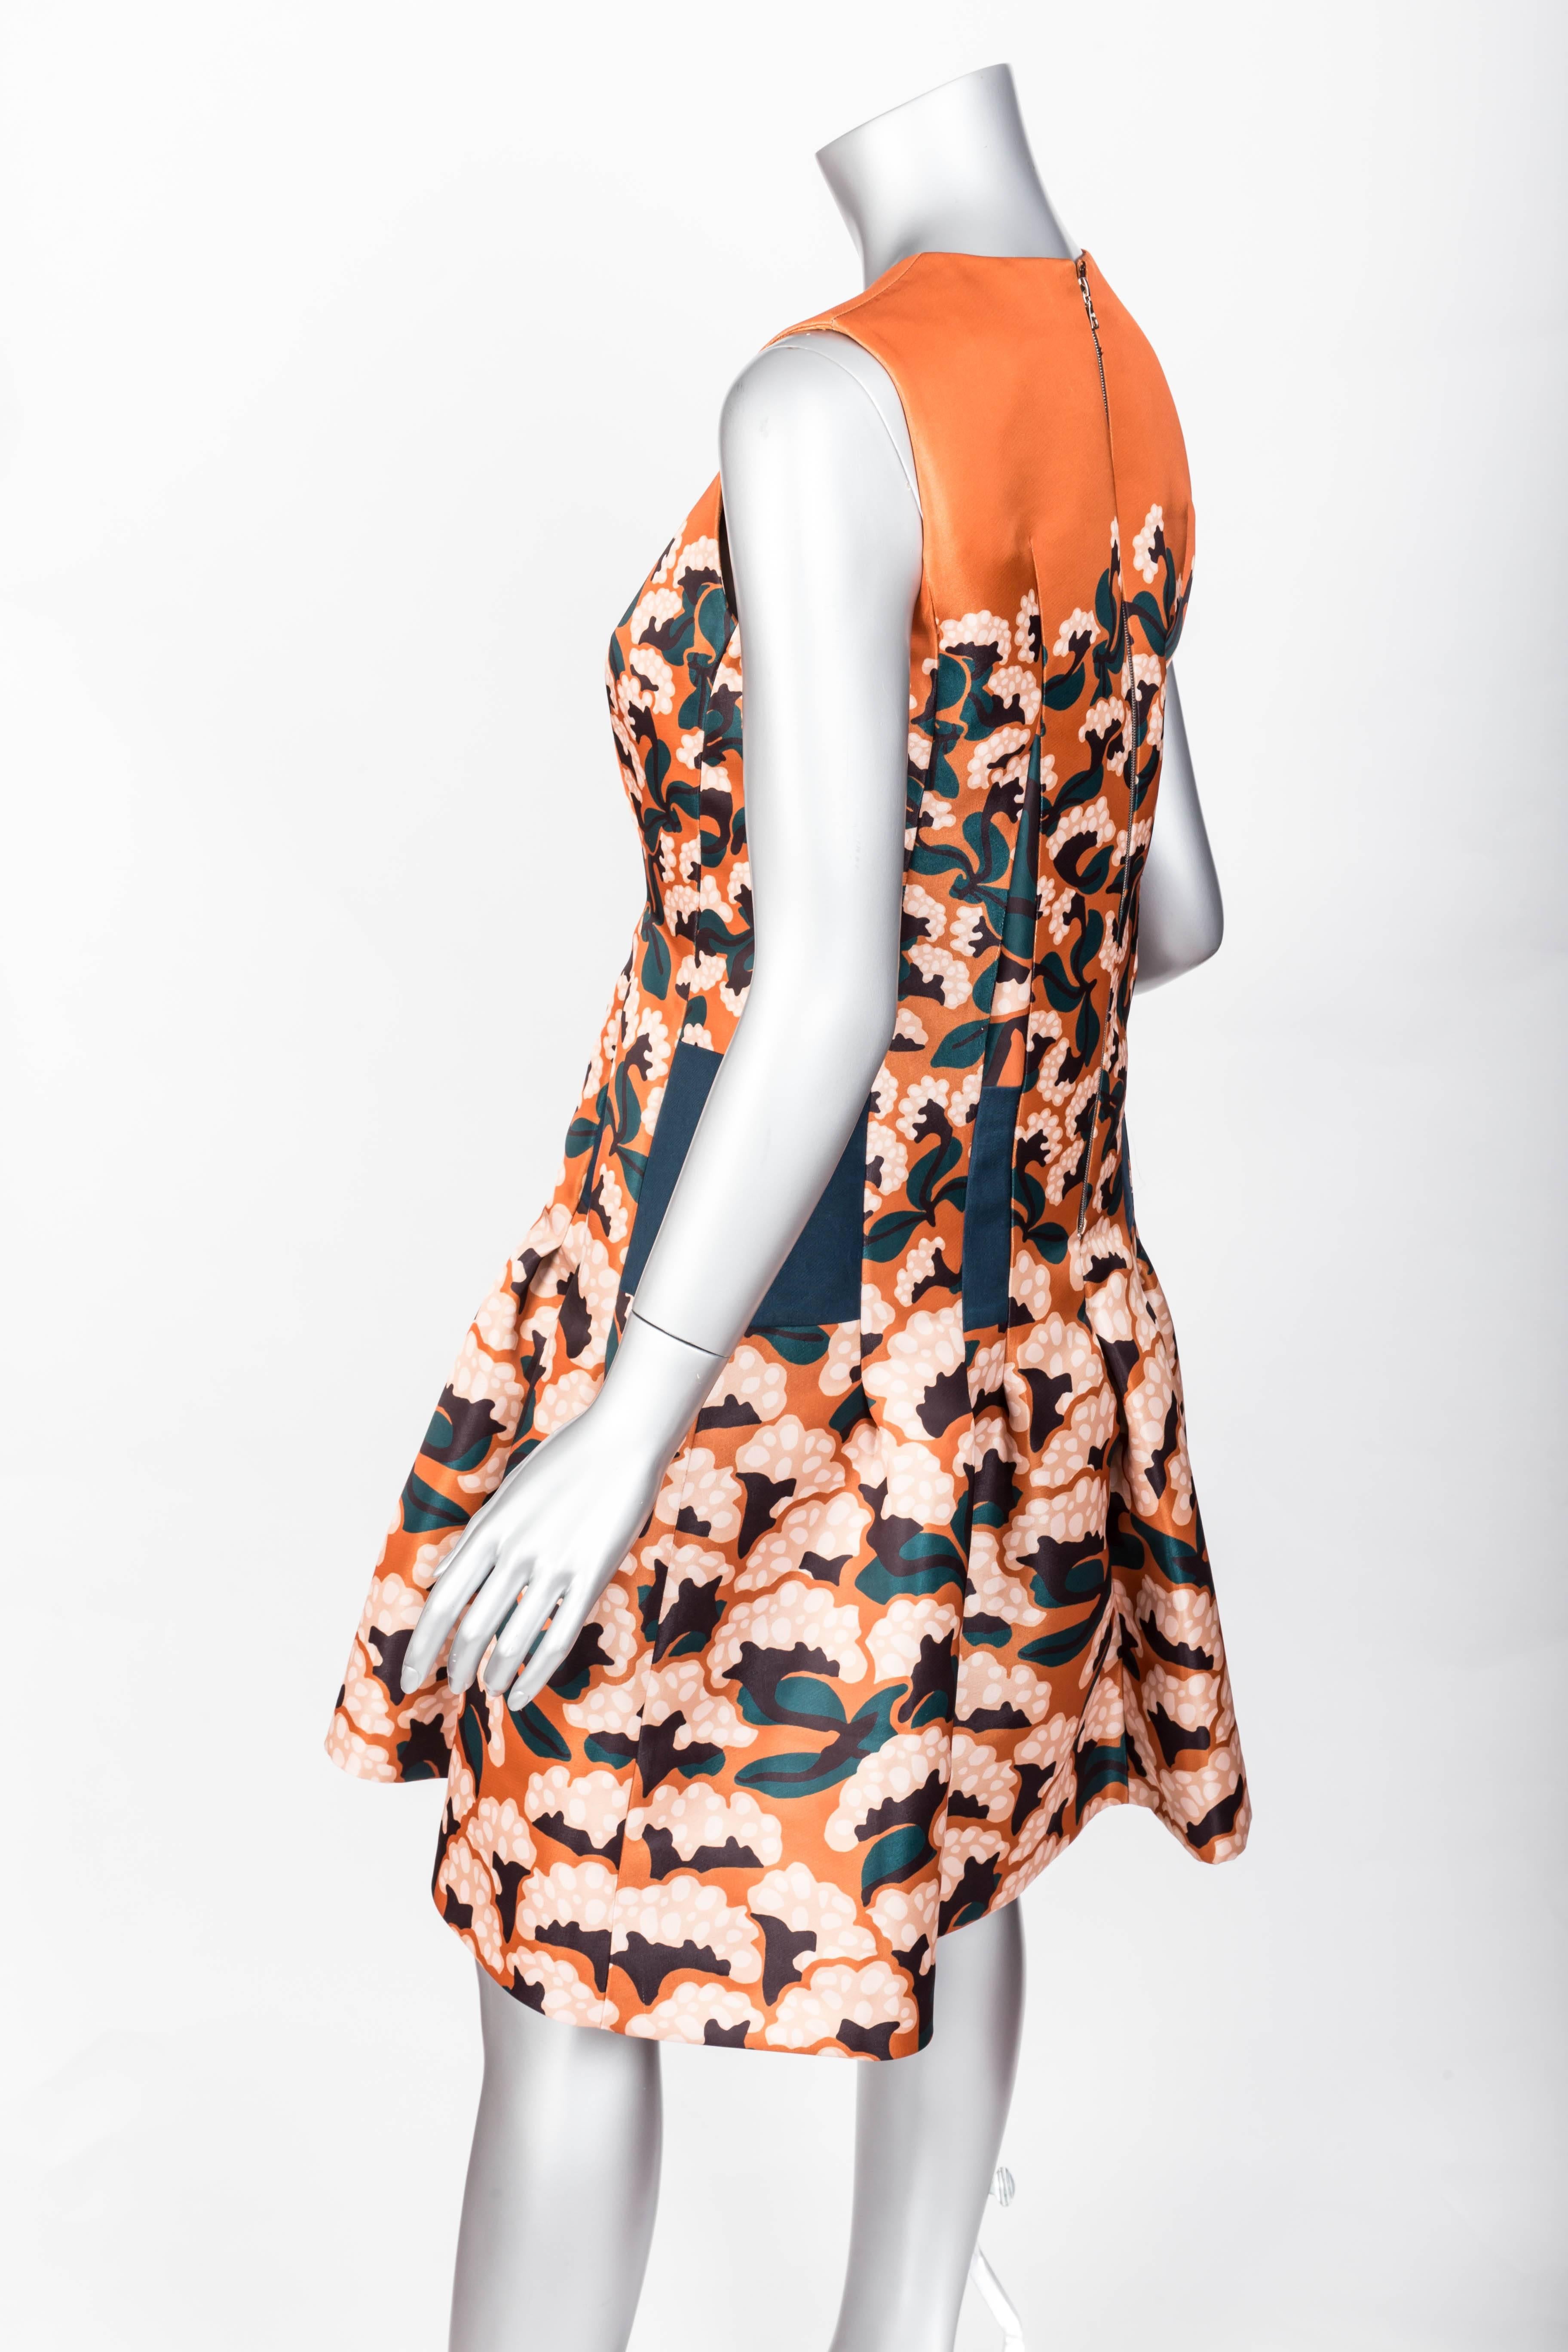 Thakoon Floral Print Dress Size 2 1